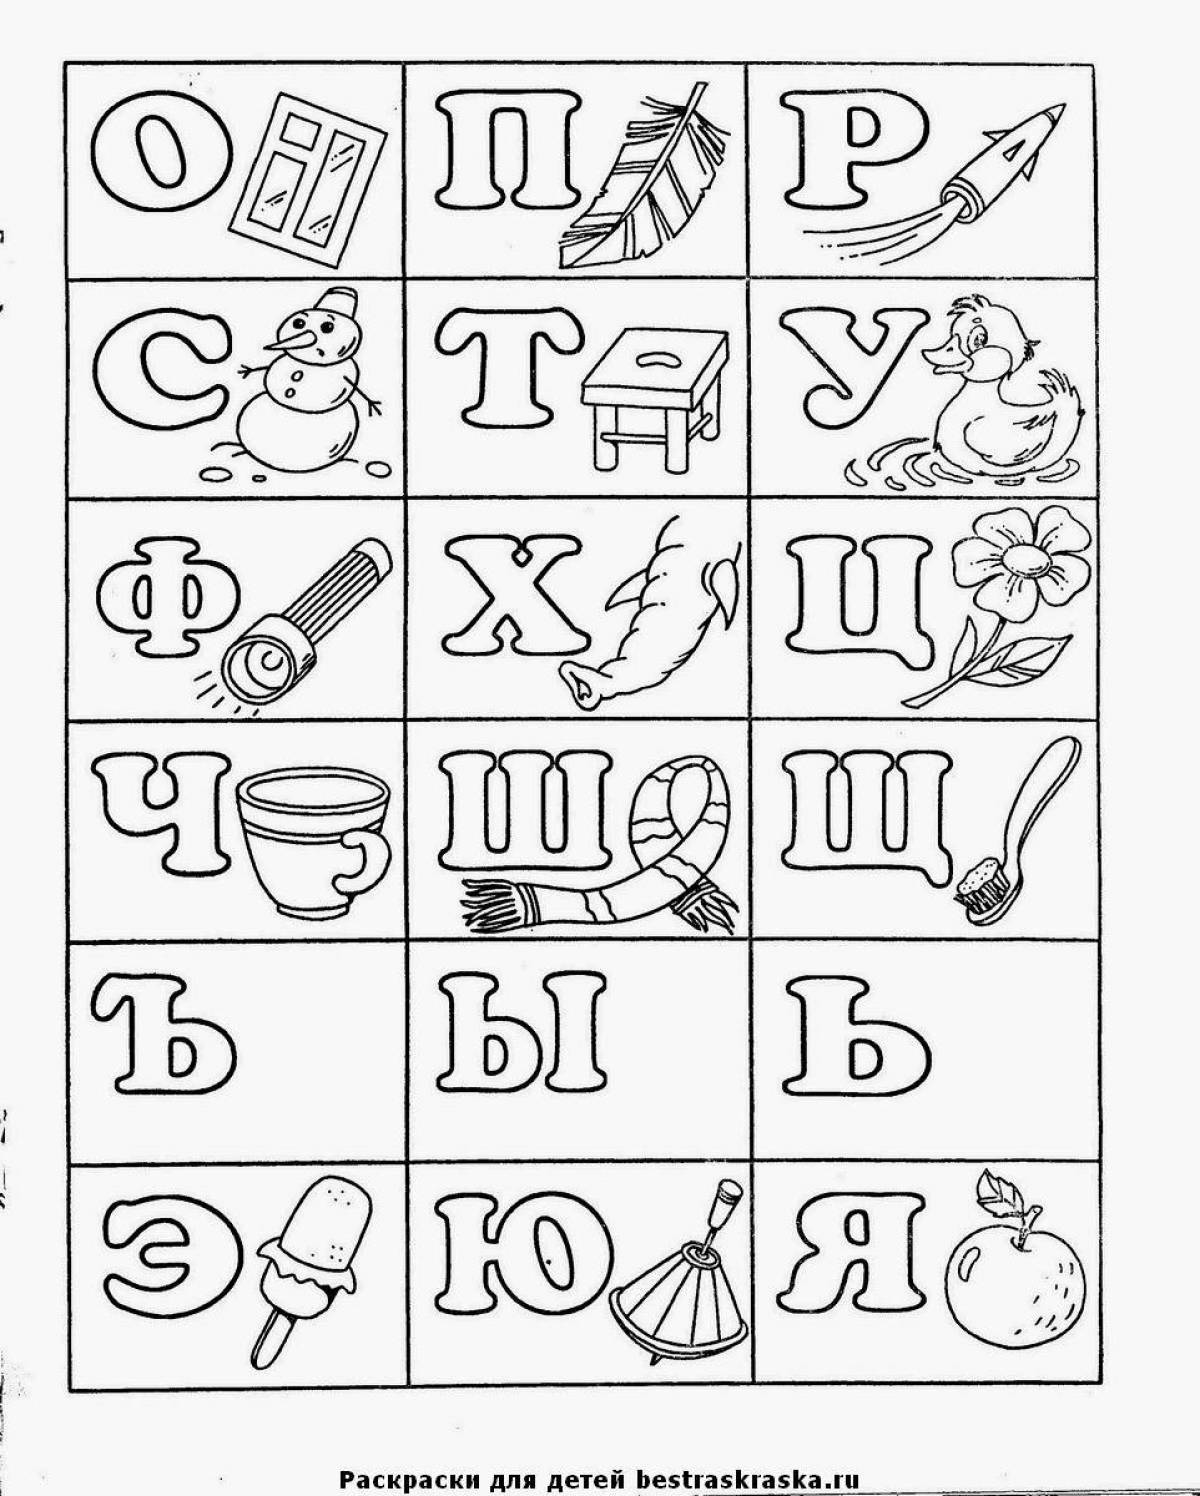 Kazakh alphabet creative coloring book